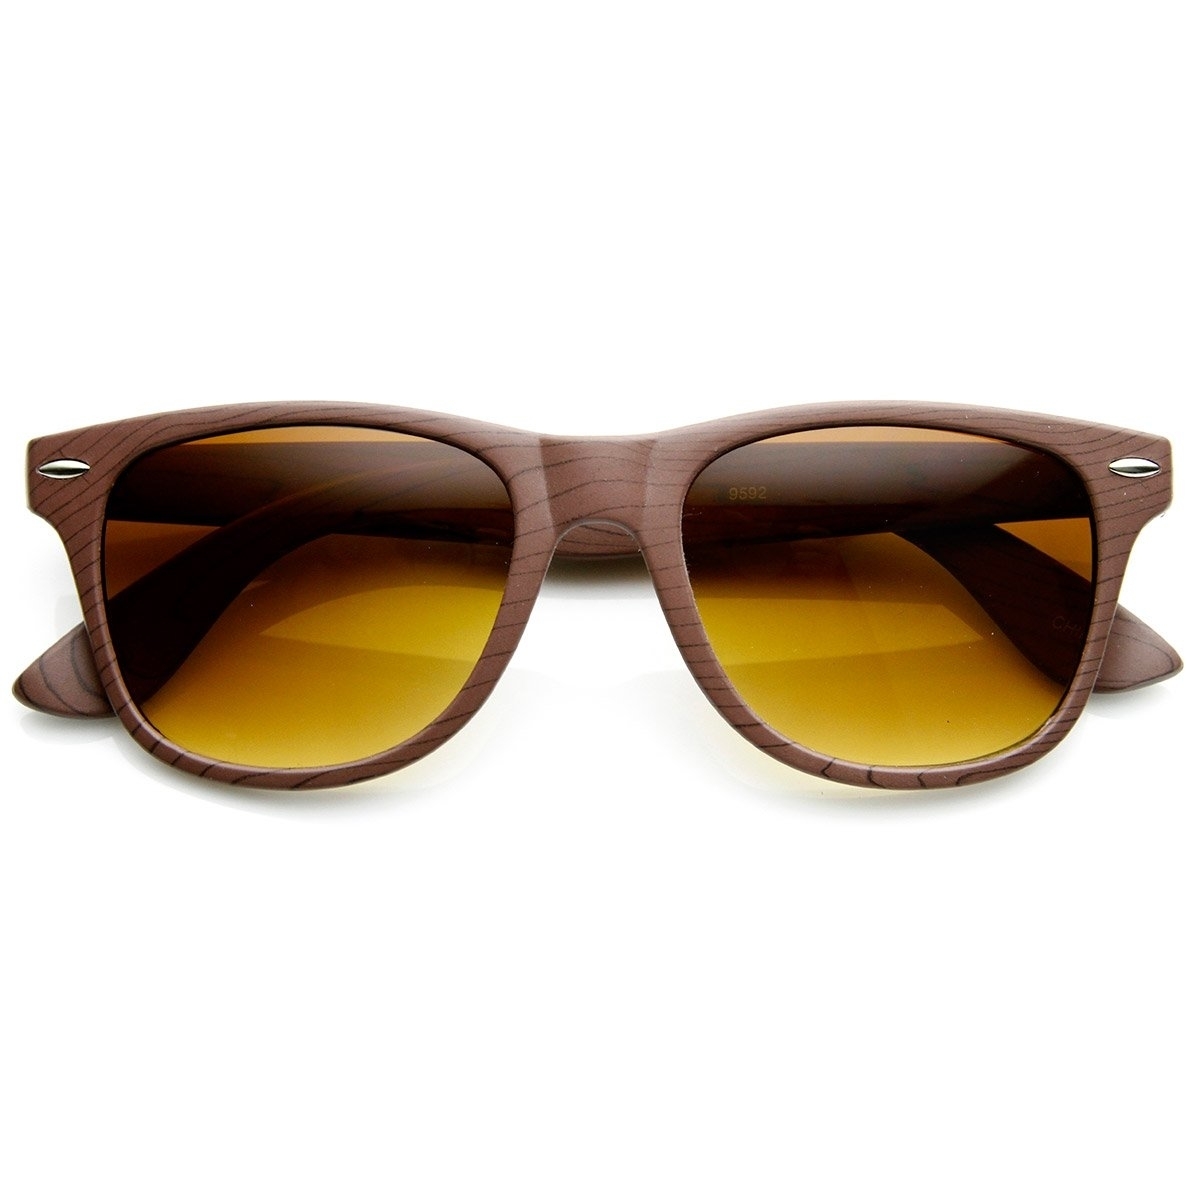 Wood Print Artistic Fashion Classic Horn Rimmed Sunglasses - Light Wood